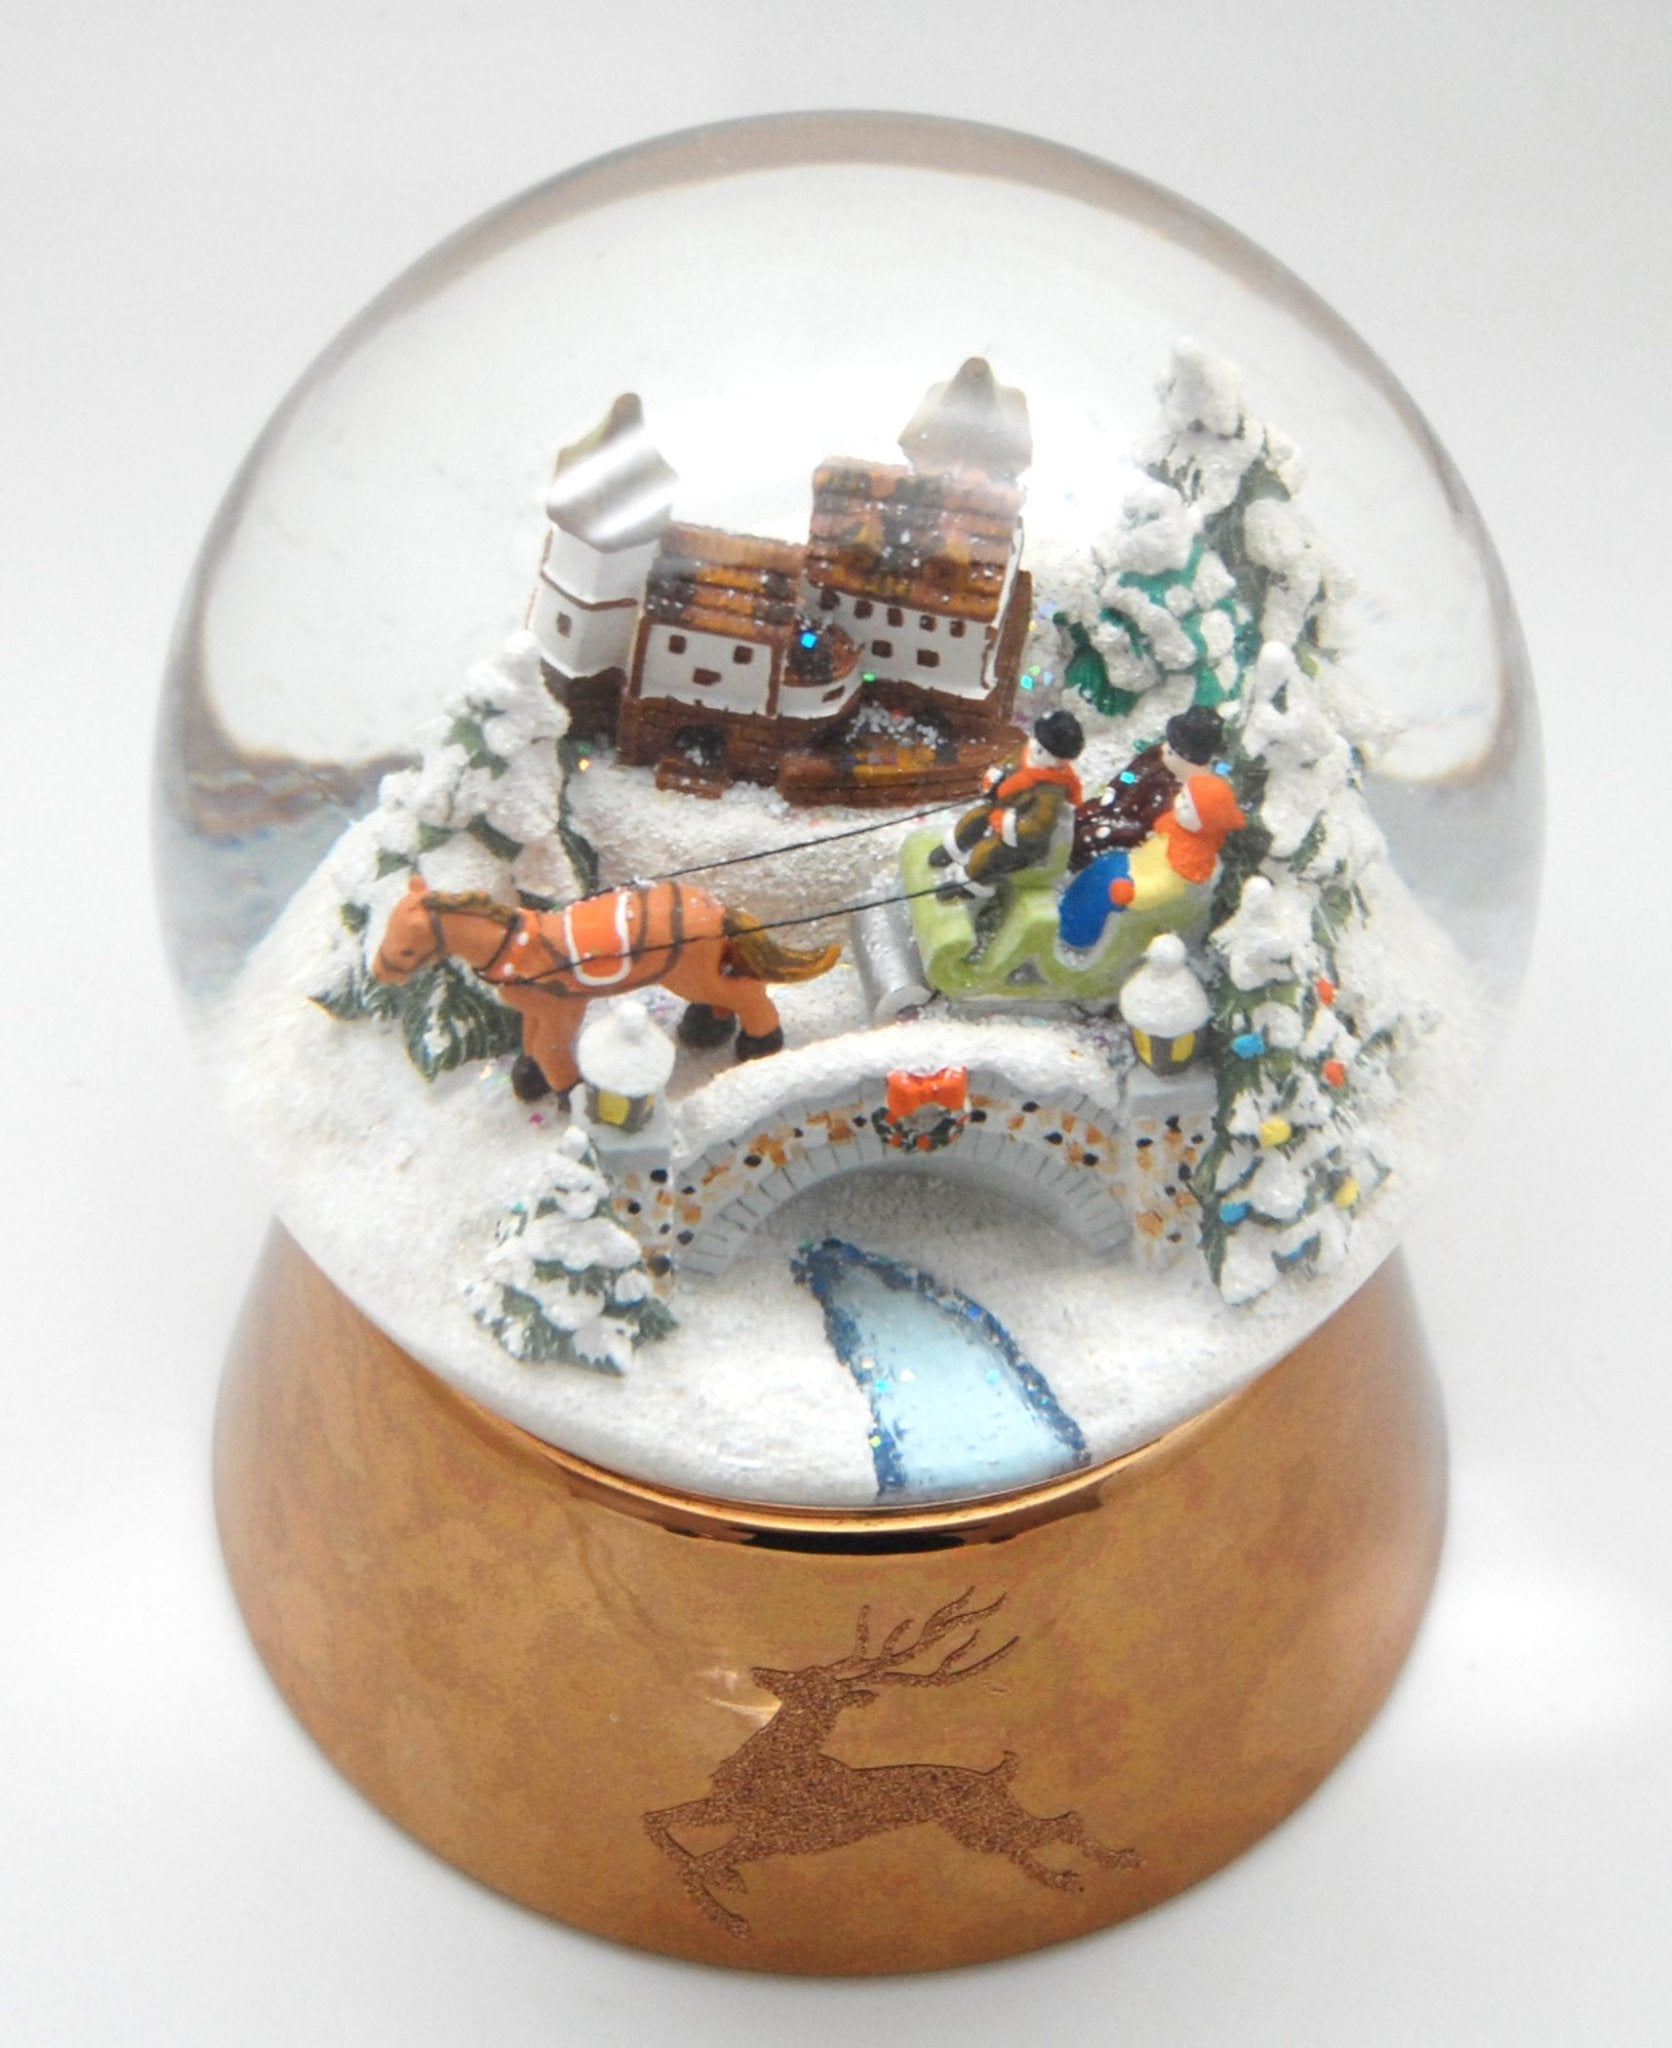 Mega-Schneekugel Romantische Schlittenfahrt in Kutsche mit Musik auf kupferfarbenen Sockel mit Hirsch - Schneekugelhaus